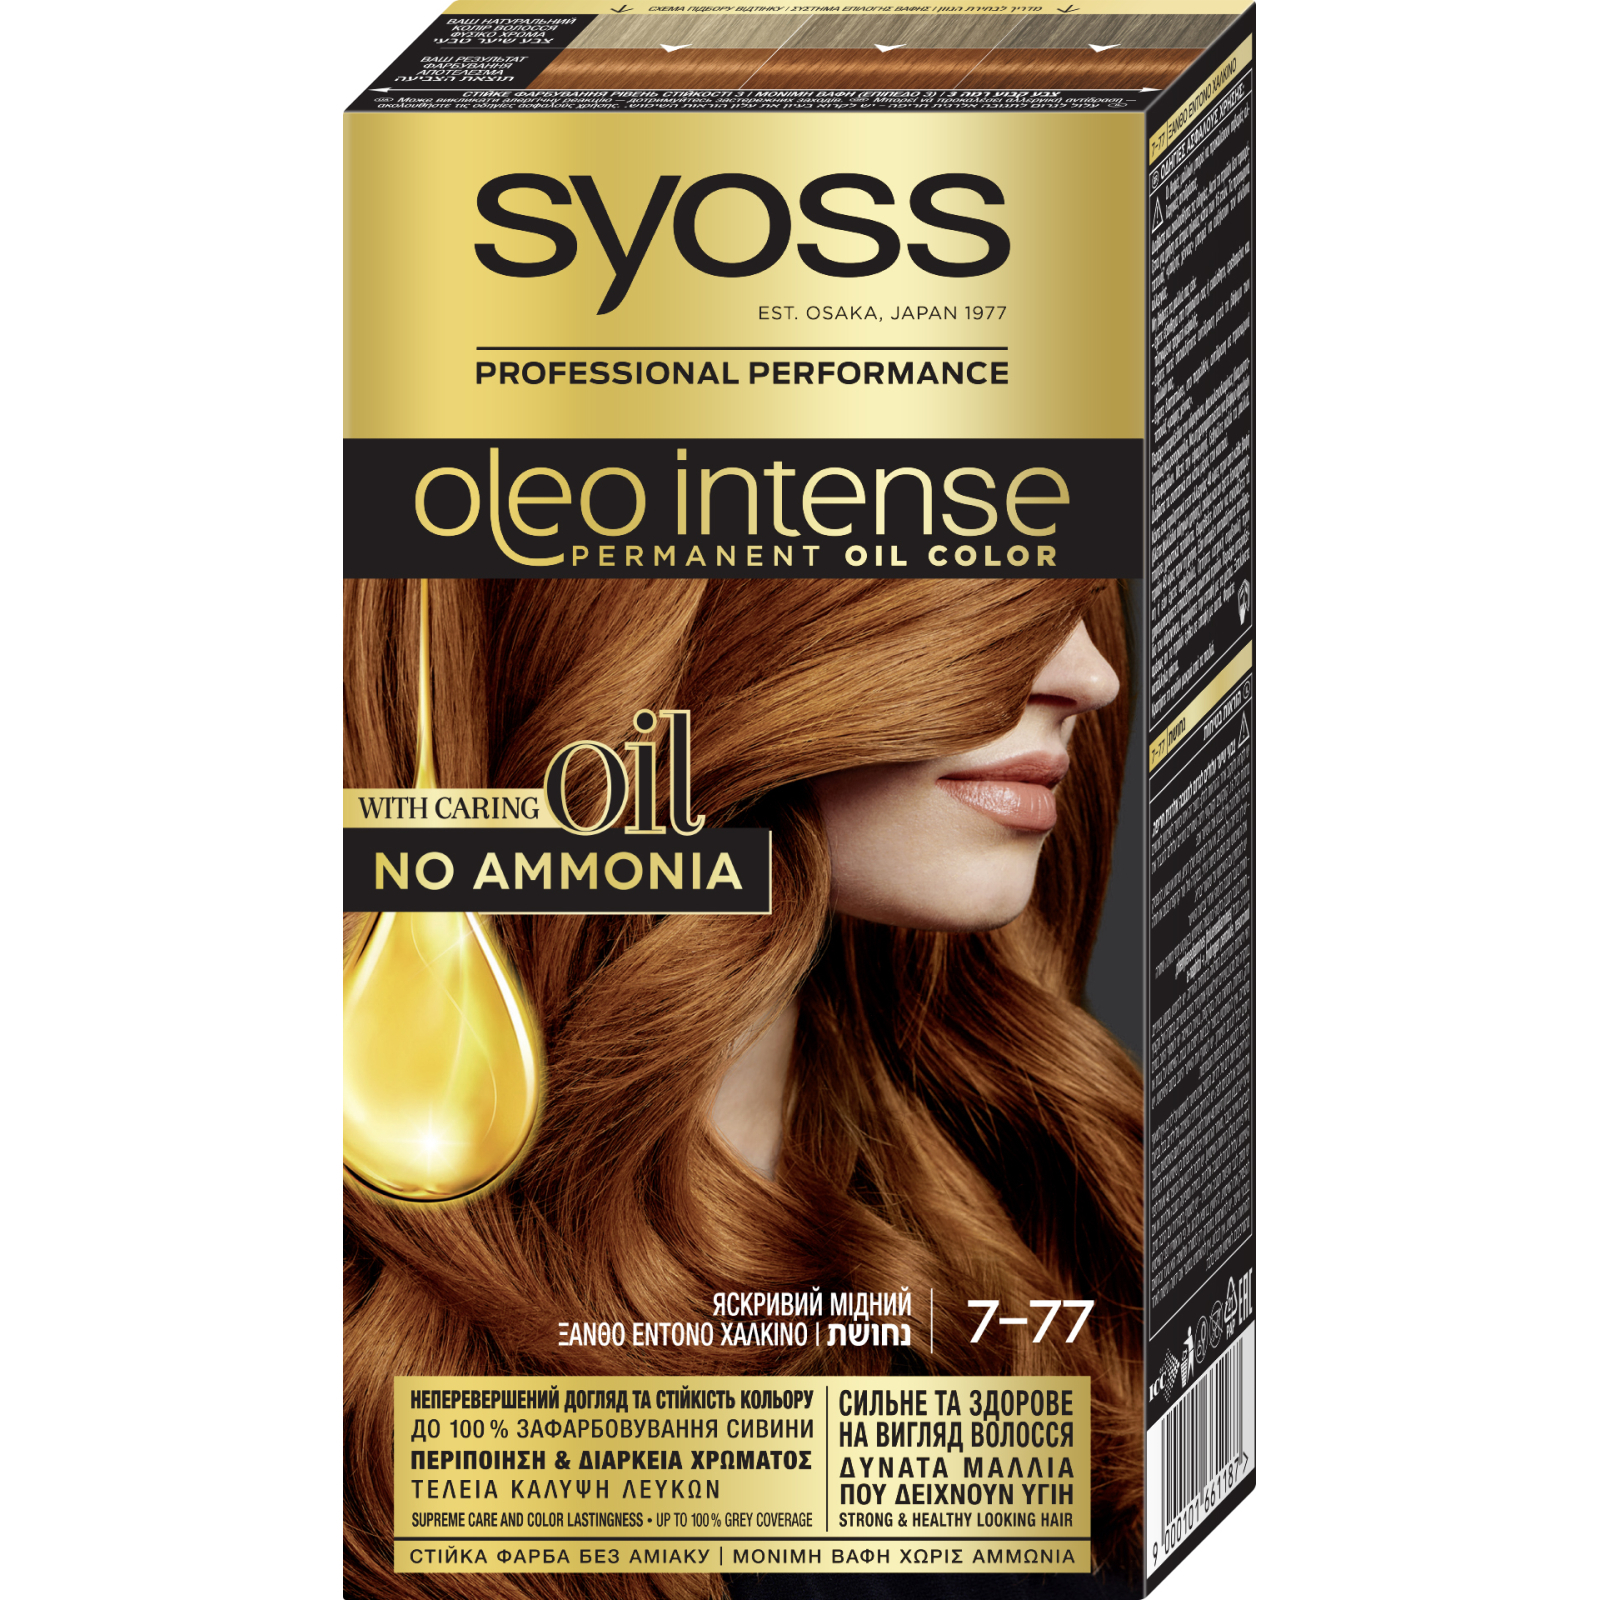 Краска для волос Syoss Oleo Intense 5-54 Холодный Светло-Каштановый 115 мл (9000101705201)